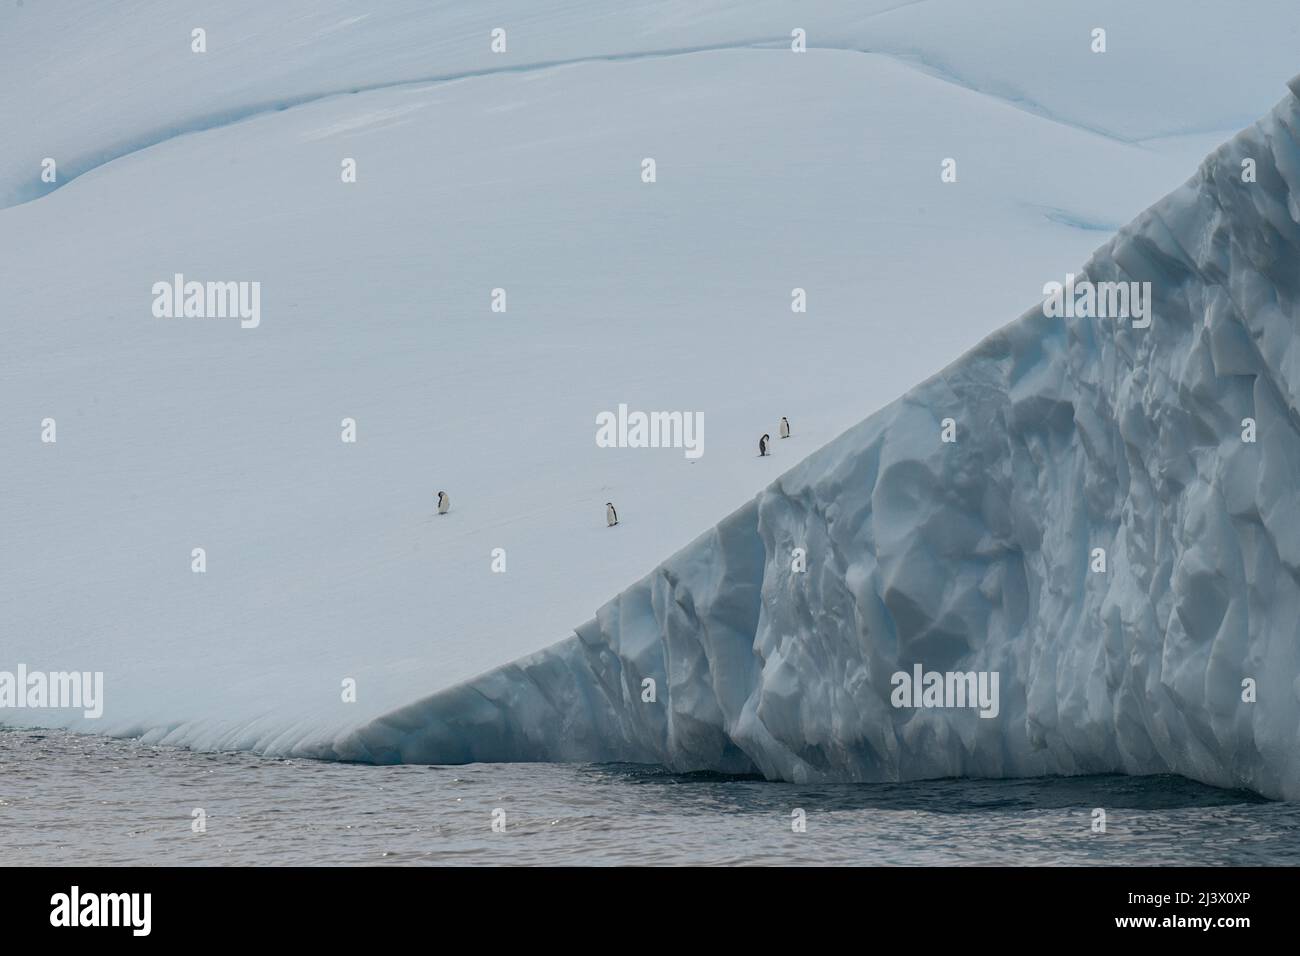 Landschaft aus Eis, Schnee, Gletschern und Eisbergen der Antarktis Stockfoto